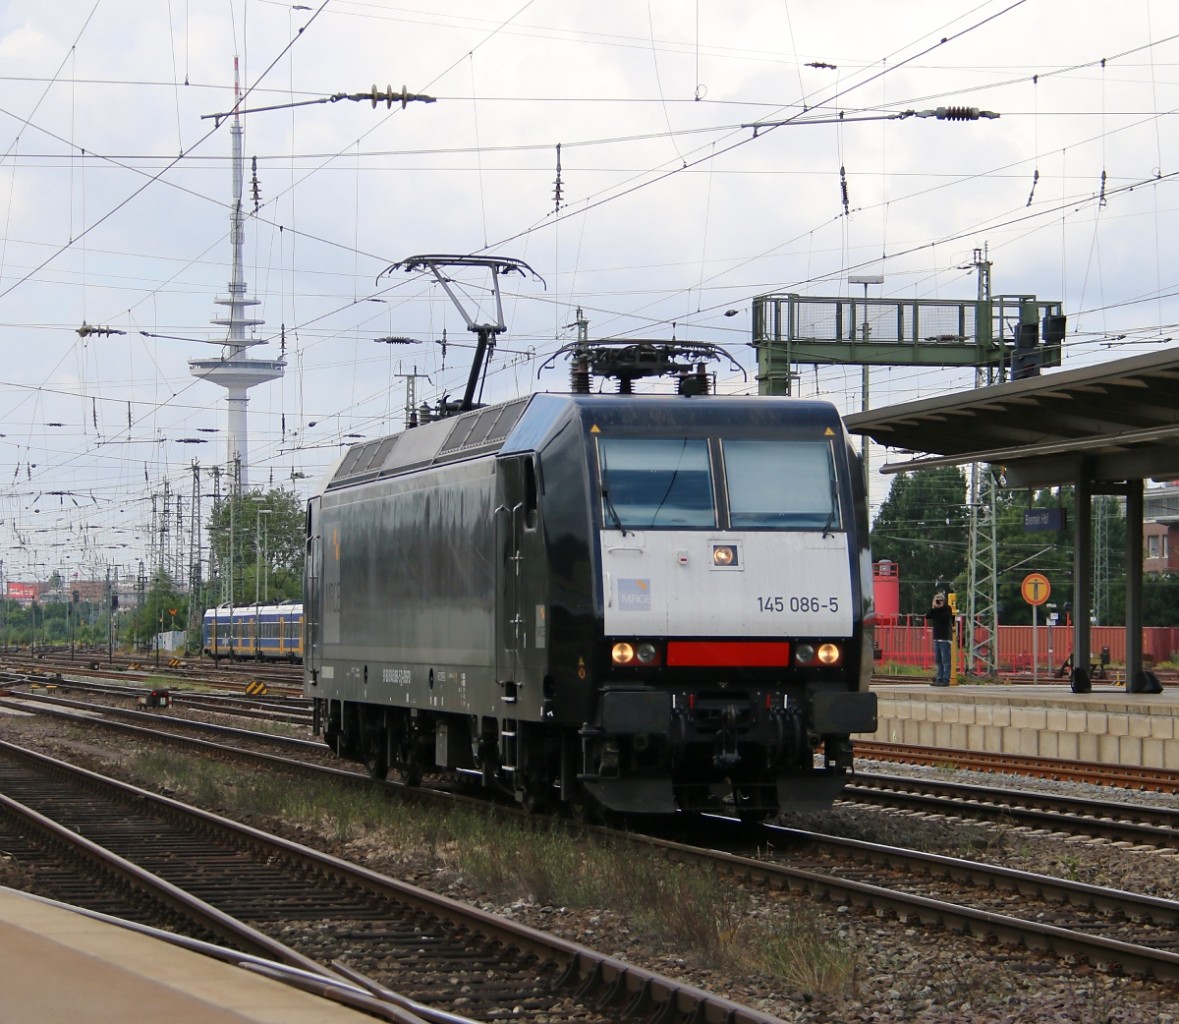 145 086-5 hatte am 14.06.2014 noch nicht lange ihr neues schwarzes Farbkleid. Hier als Tfzf in Richtung Süden durch den Bremer Hauptbahnhof.